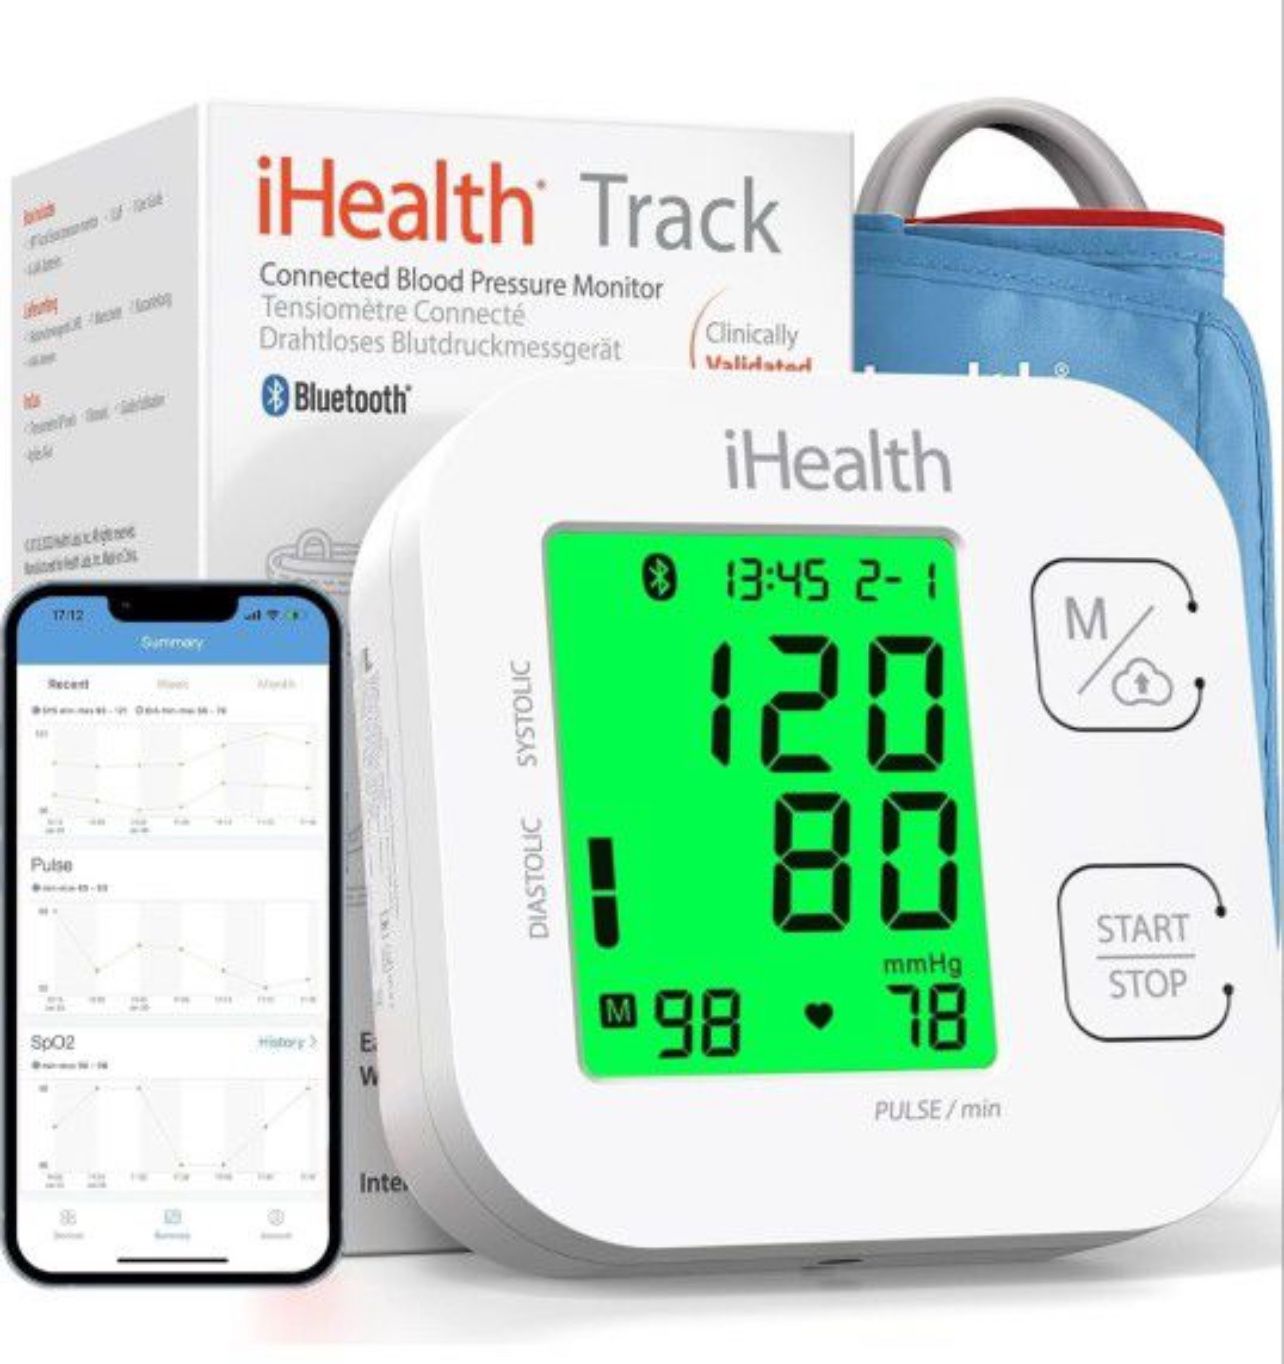 Free iHealth Blood Pressure Monitor